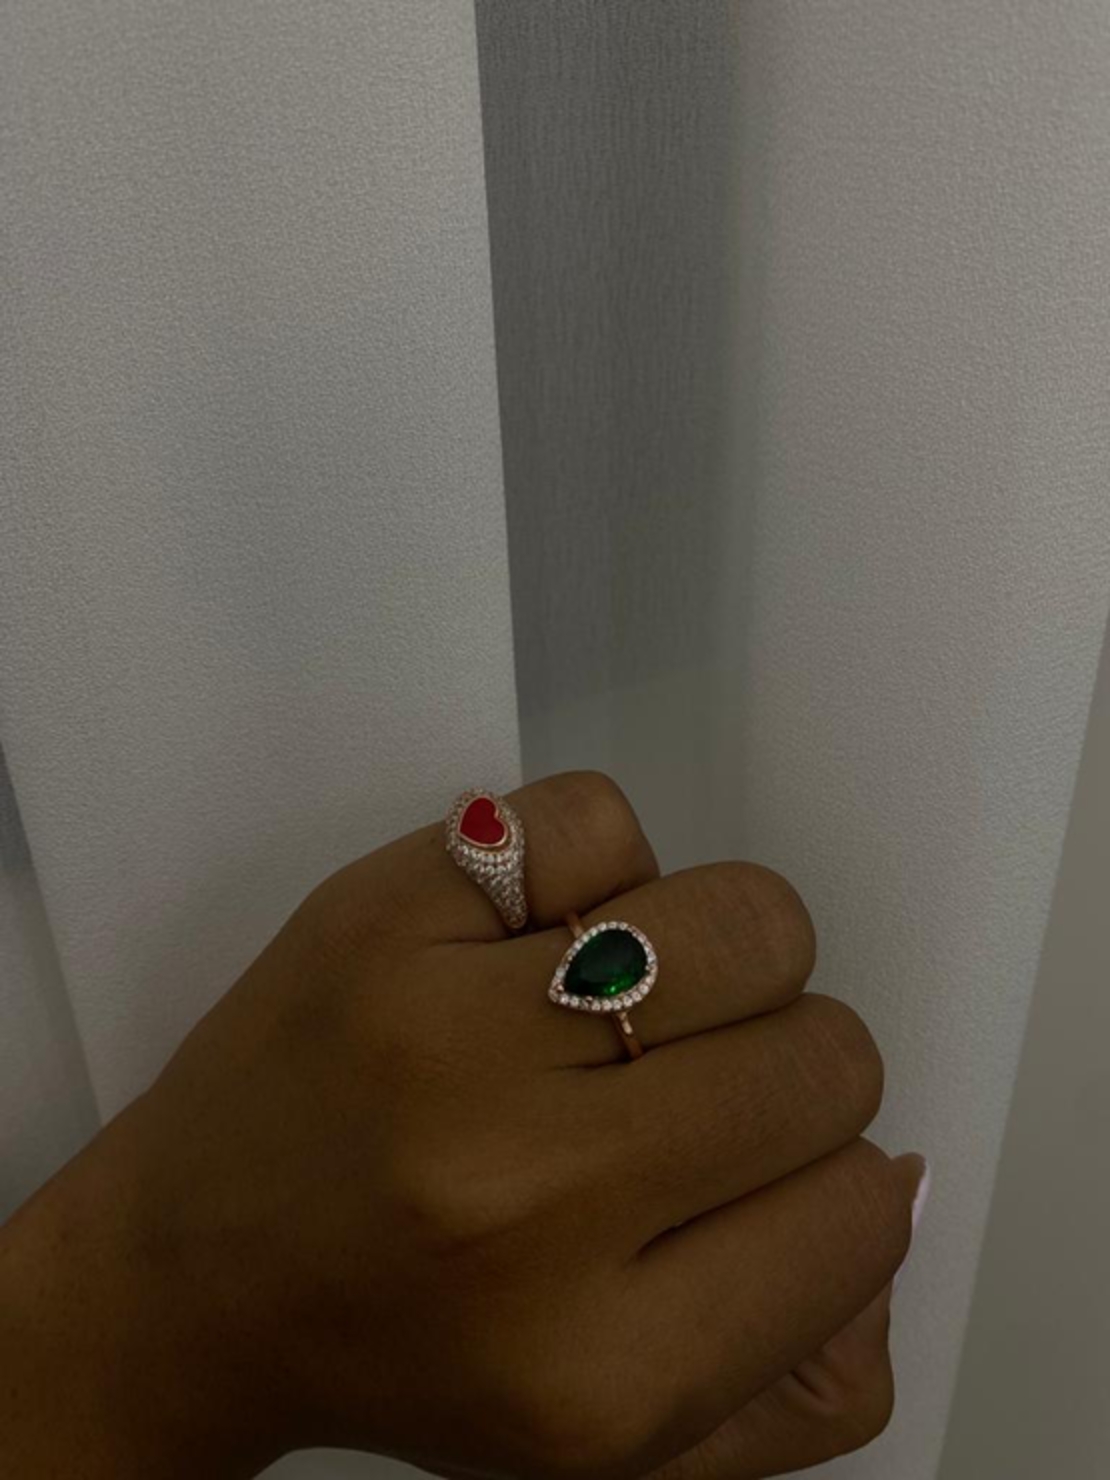 טבעת טיפה ירוקה כסף 925 בציפוי רוז גולד